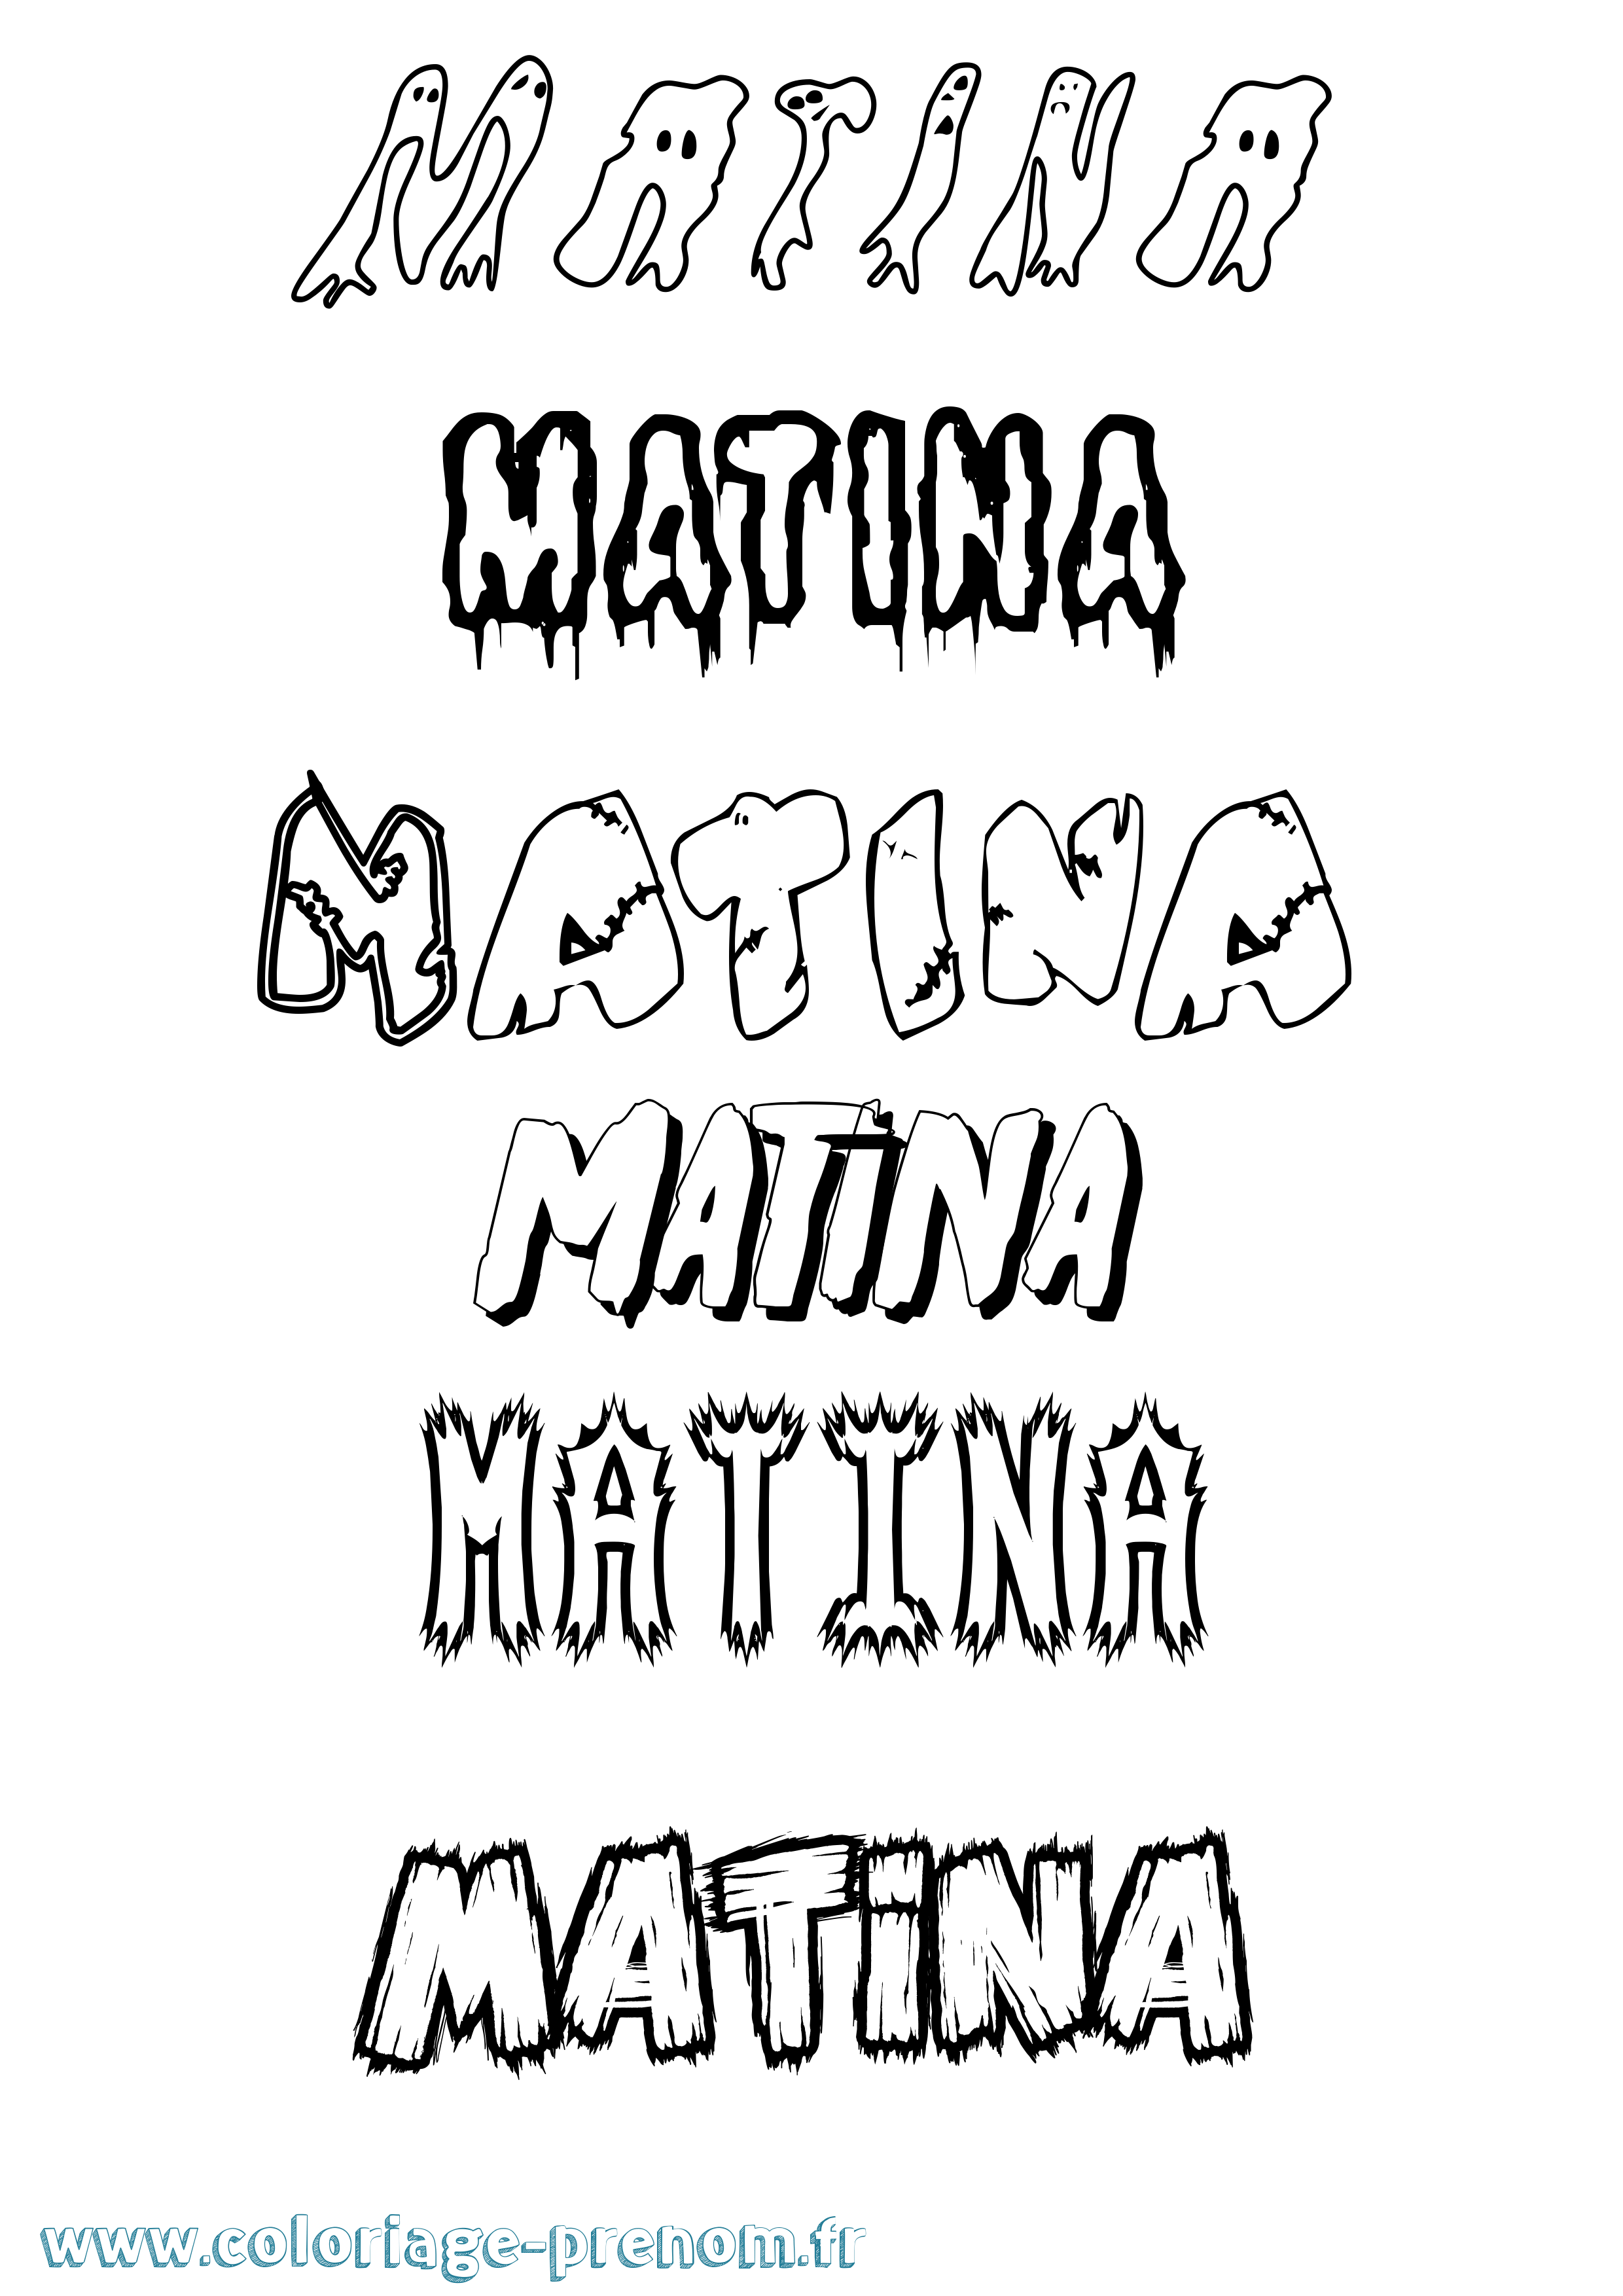 Coloriage prénom Matina Frisson